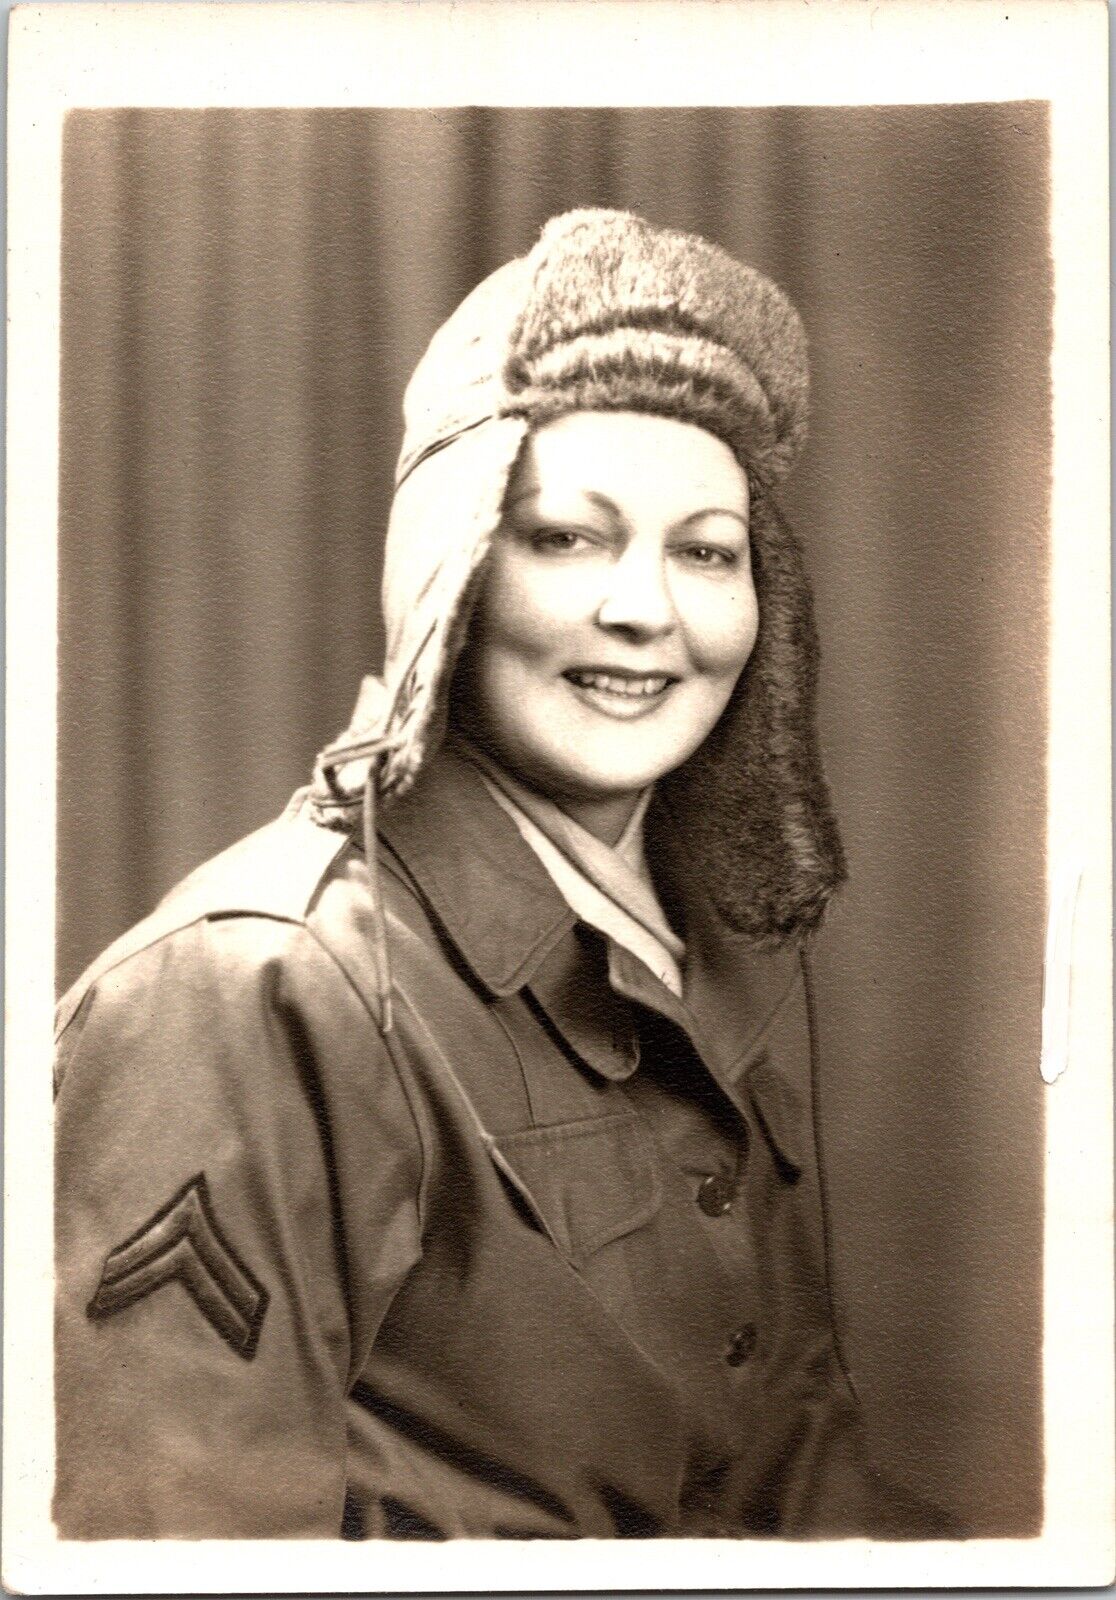 Vtg Found B&W Photo WW2 Soldier Women Portrait Military Army 1940s Retro